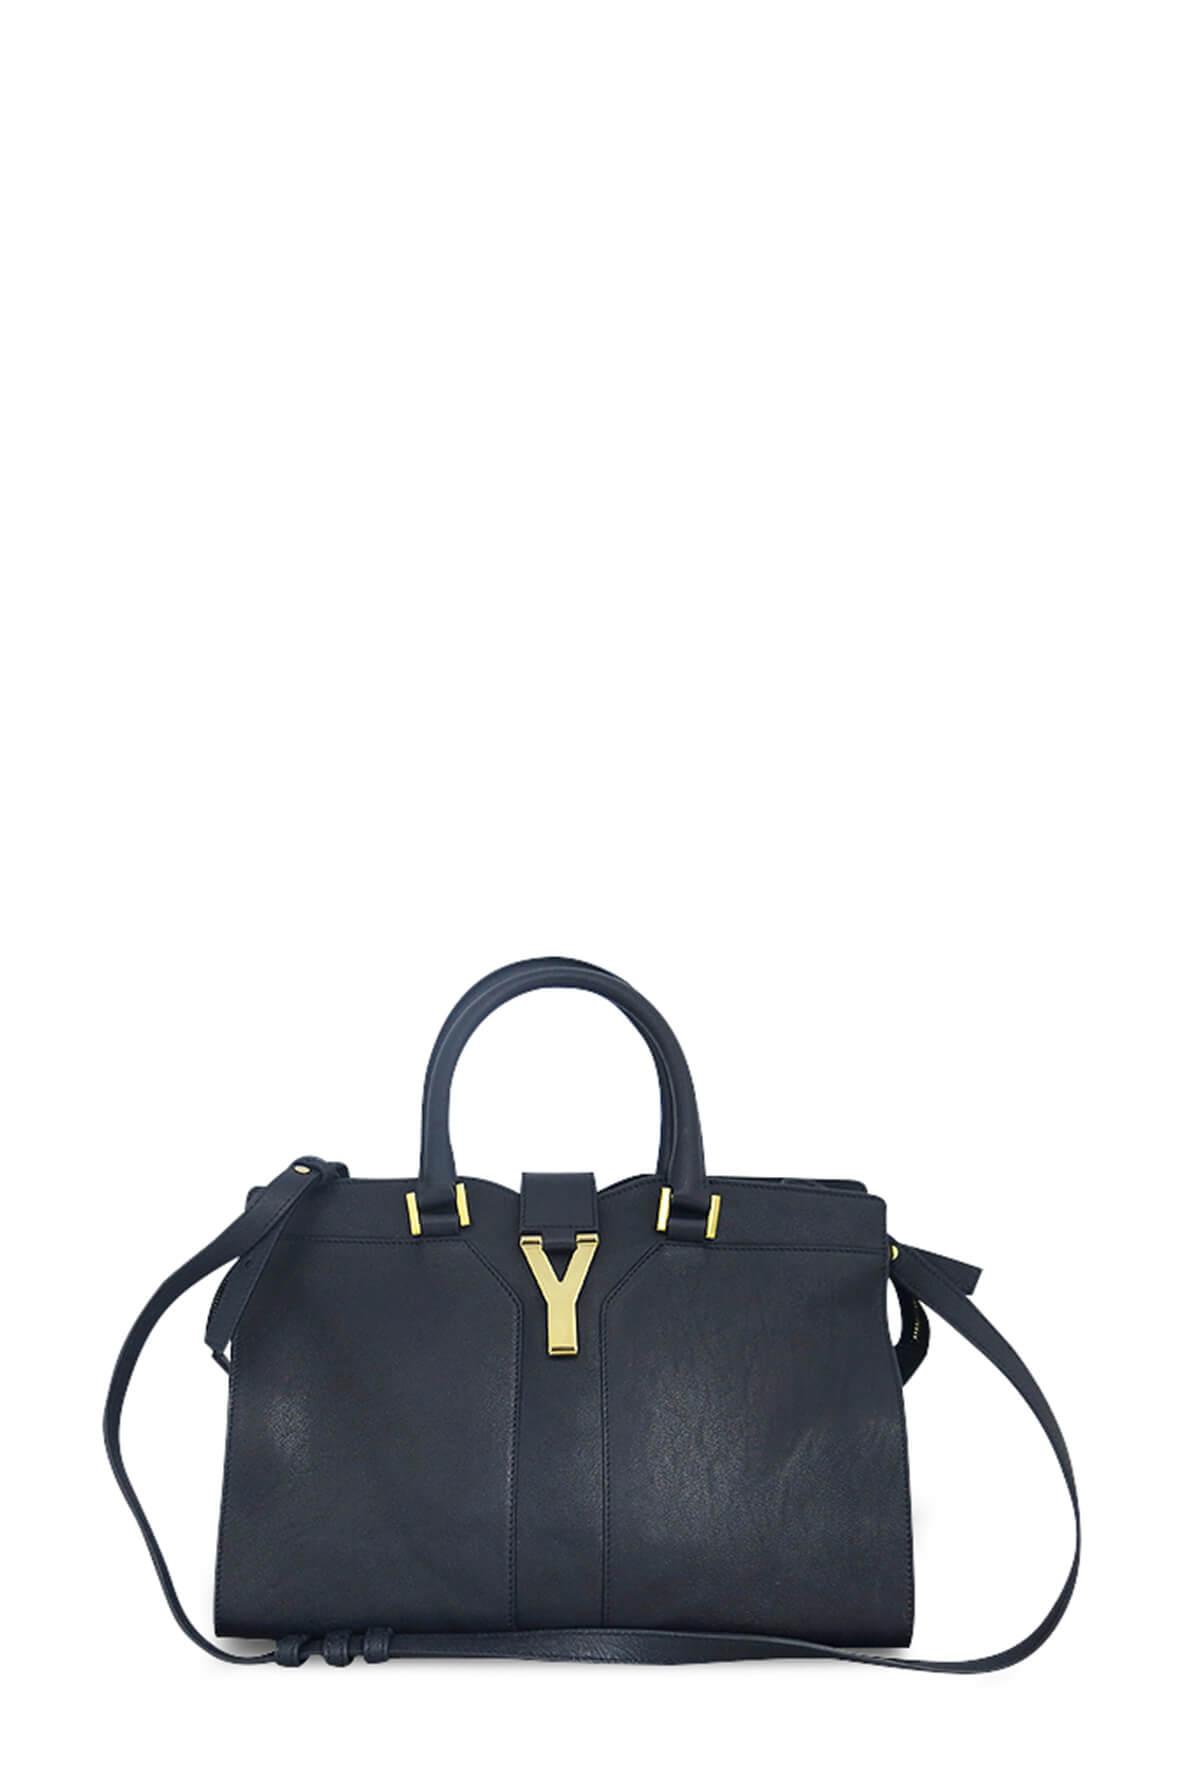 SAINT LAURENT cabas chyc black small handbag [authentic]